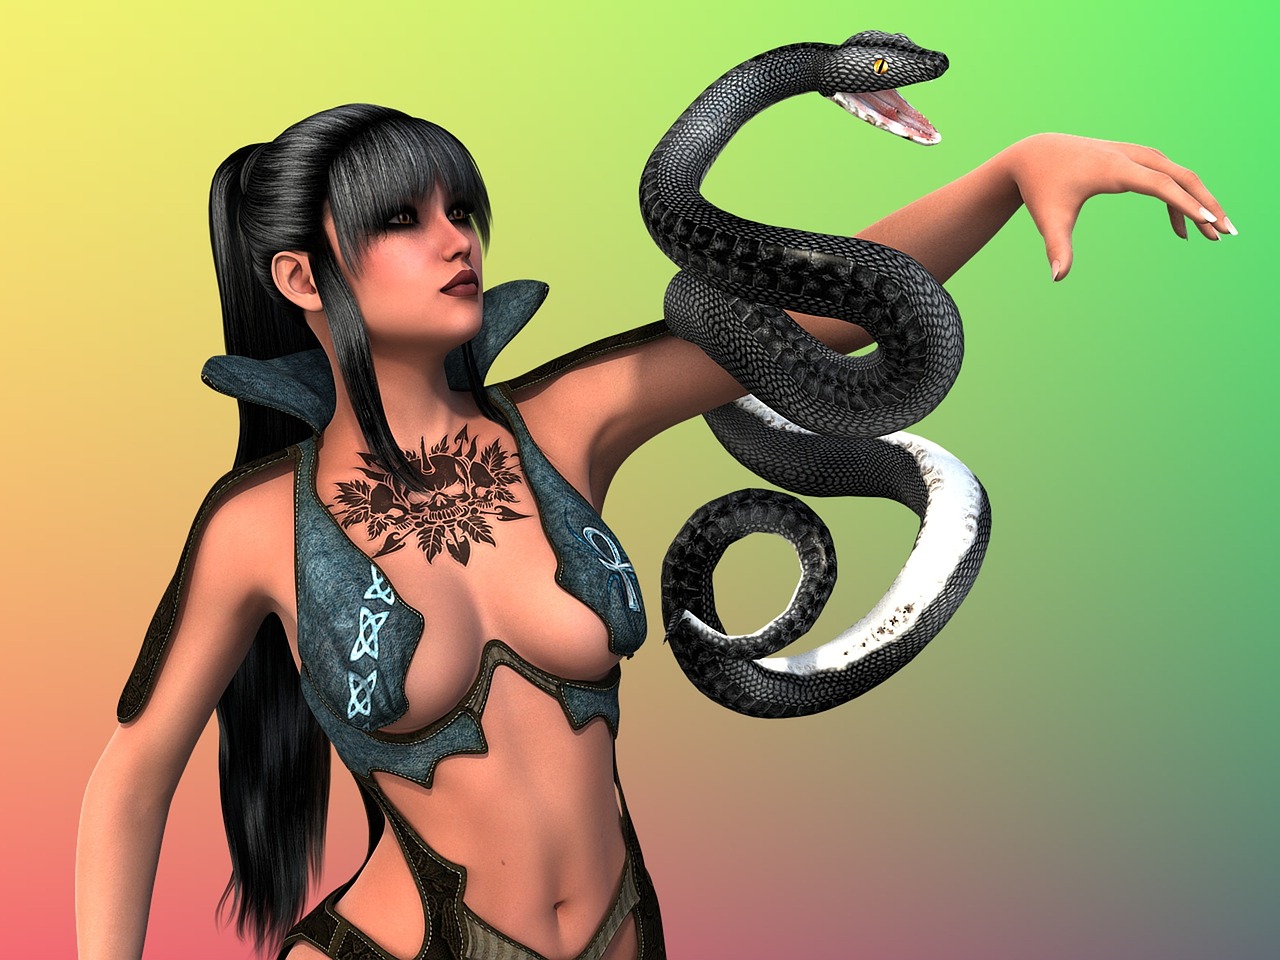 woman snake amazone free photo